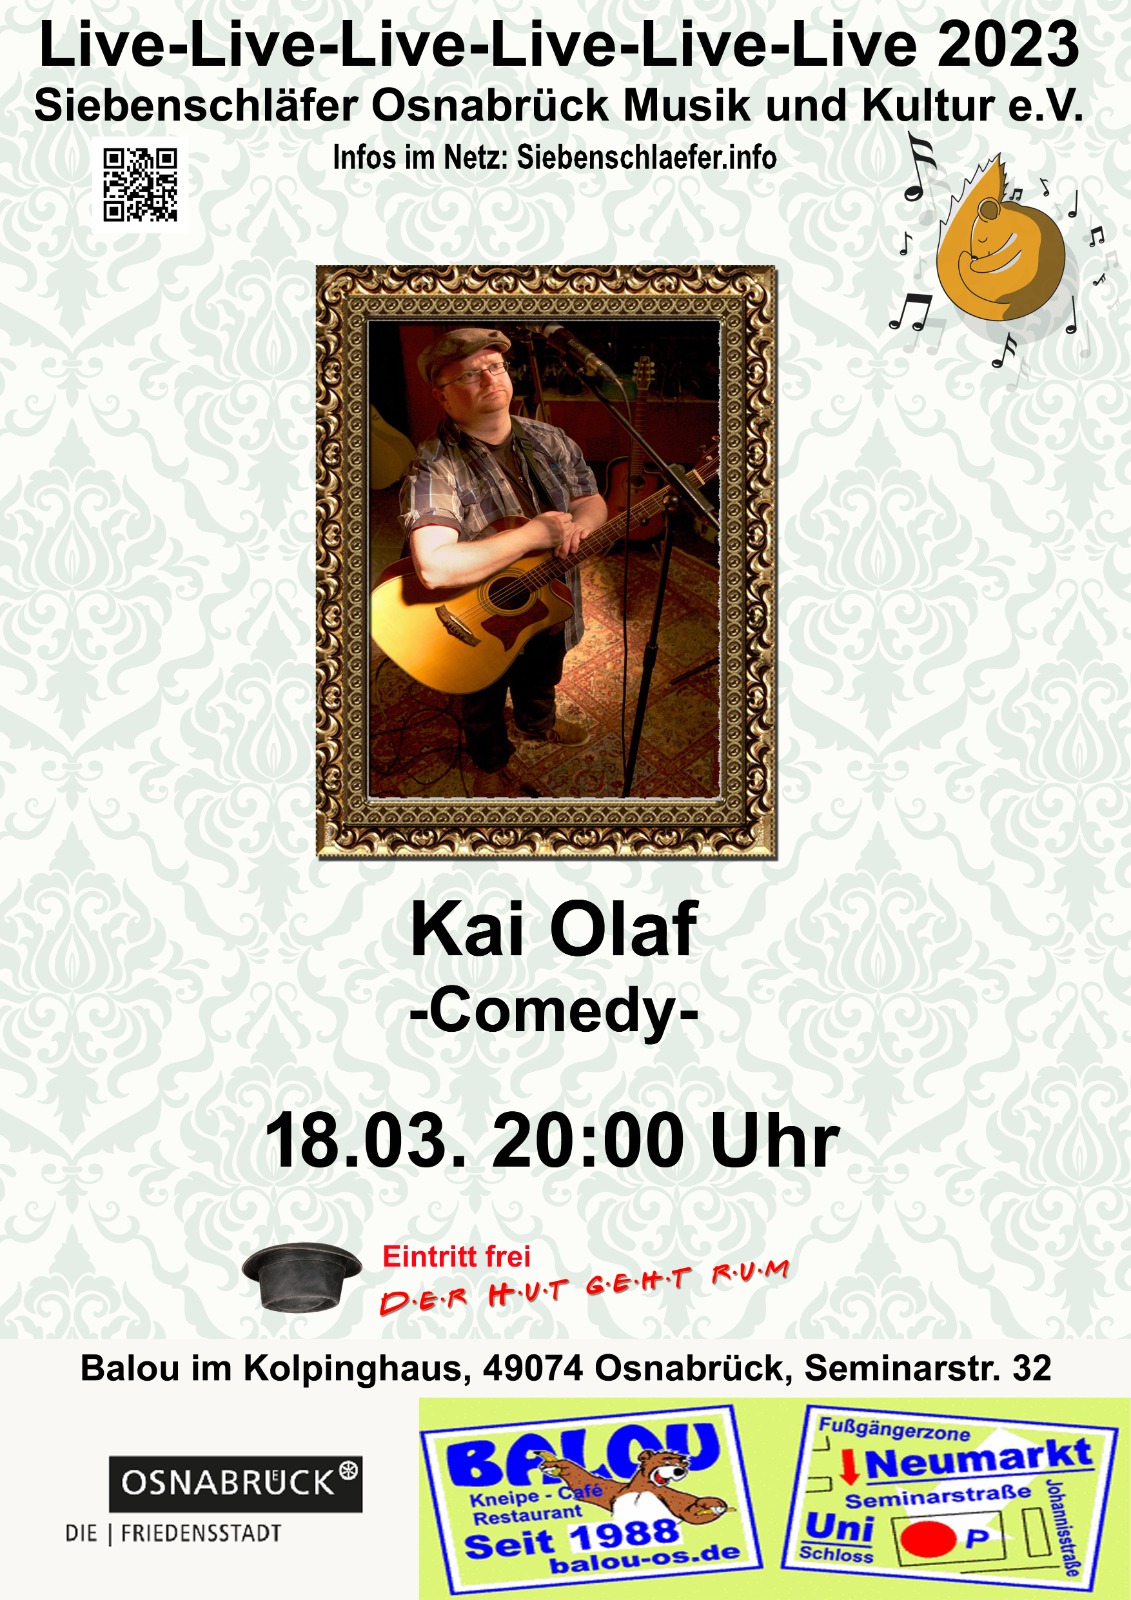 Veranstaltungsplakat Siebenschläfer Comedy mit Kai Olaf im Balou